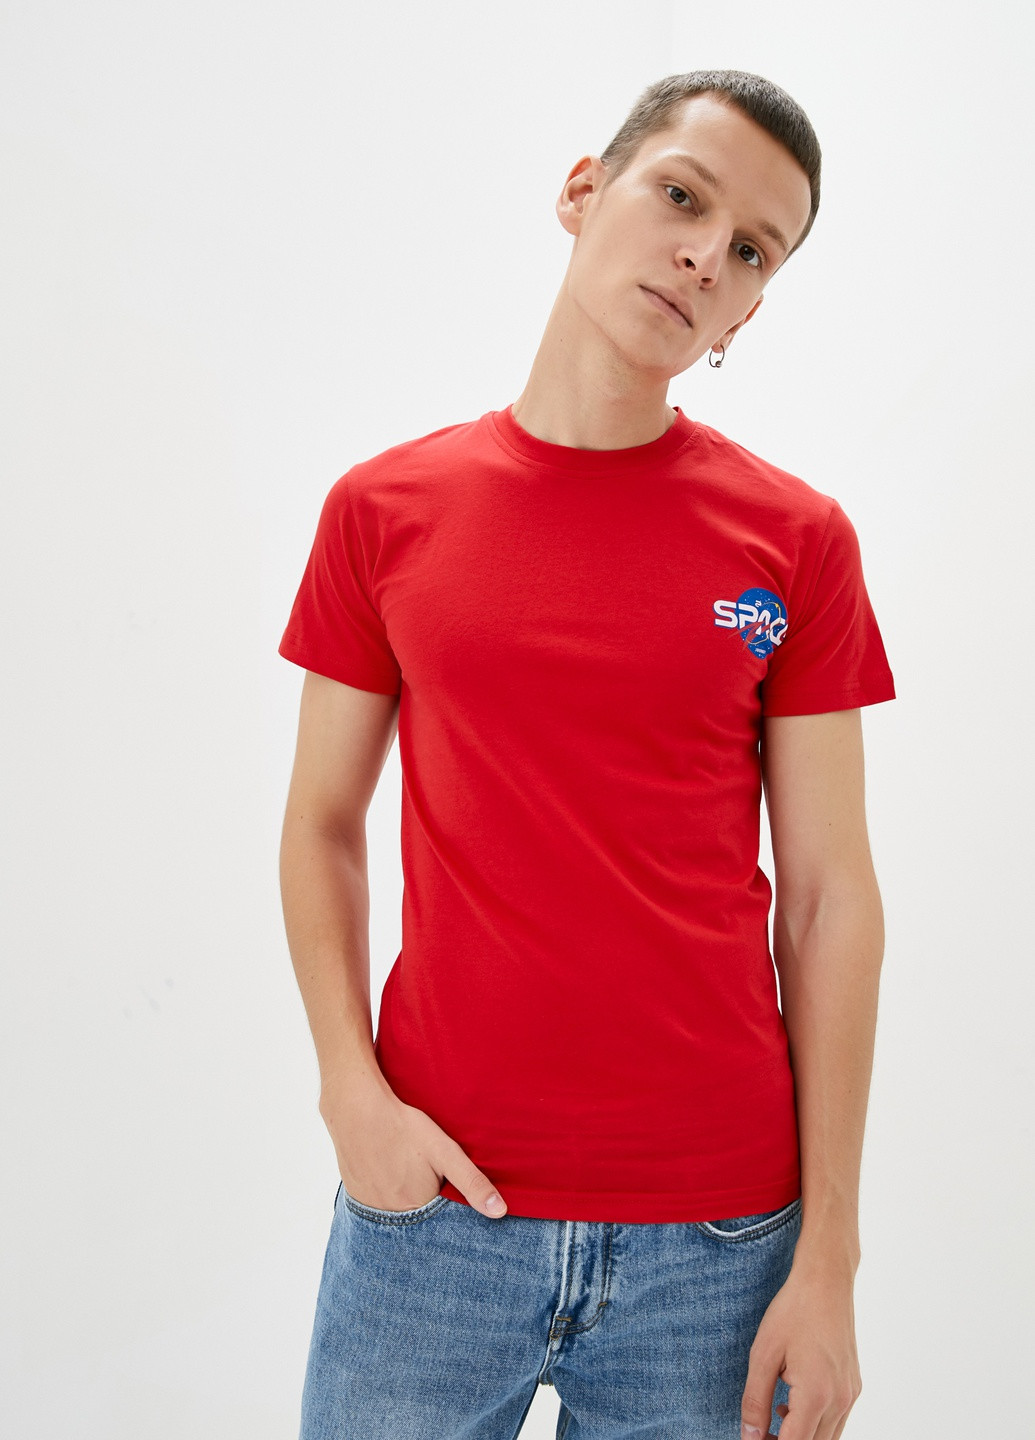 Красная футболка Redpolo